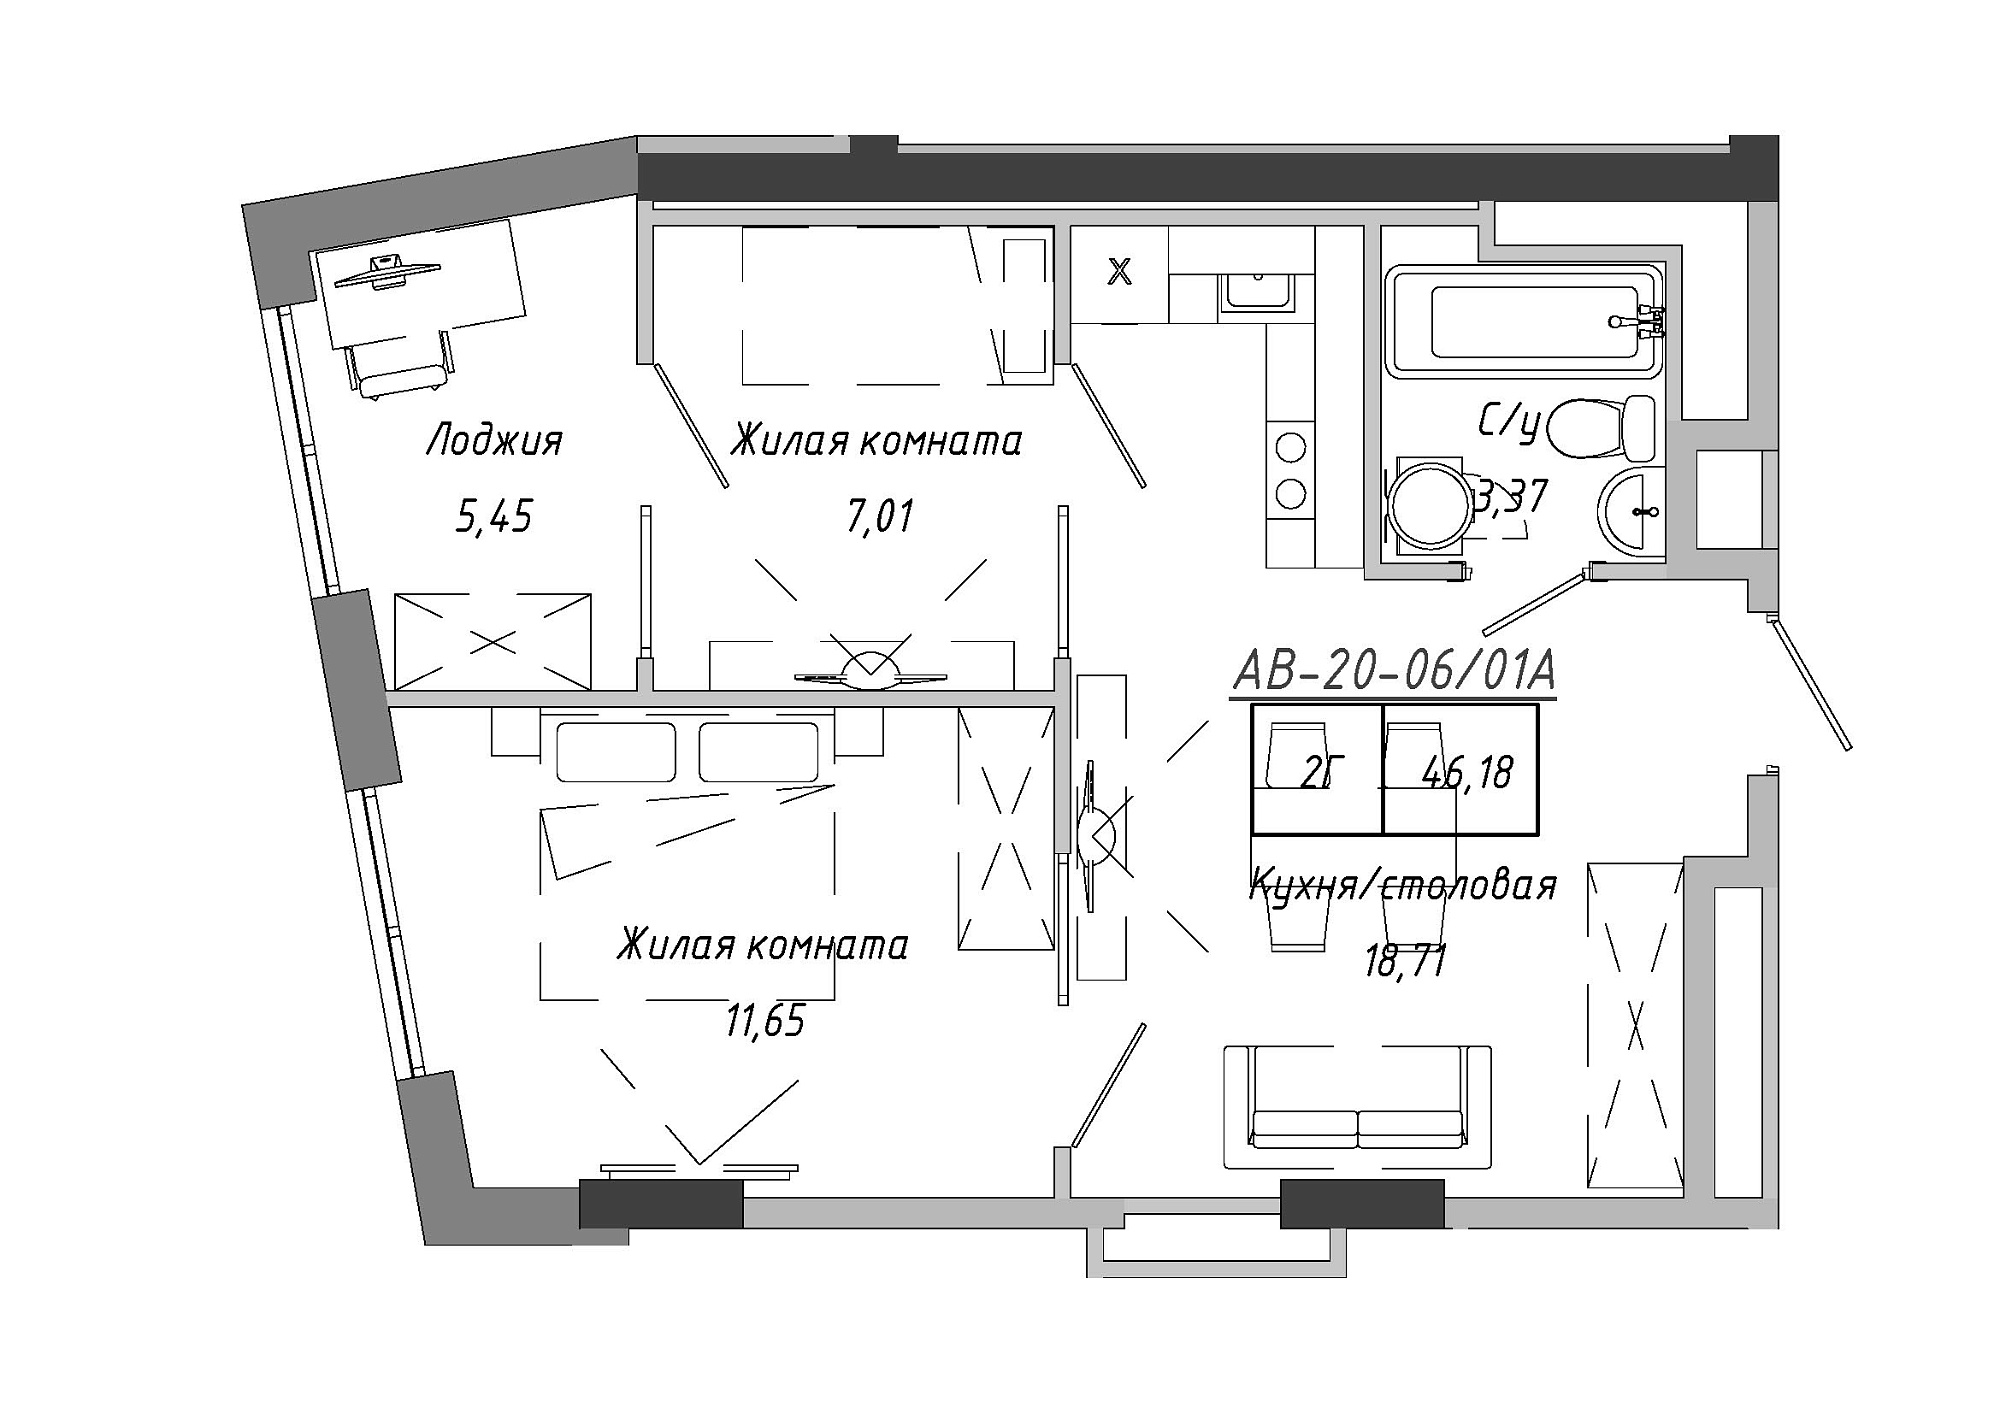 Планування 2-к квартира площею 45.99м2, AB-20-06/0001а.